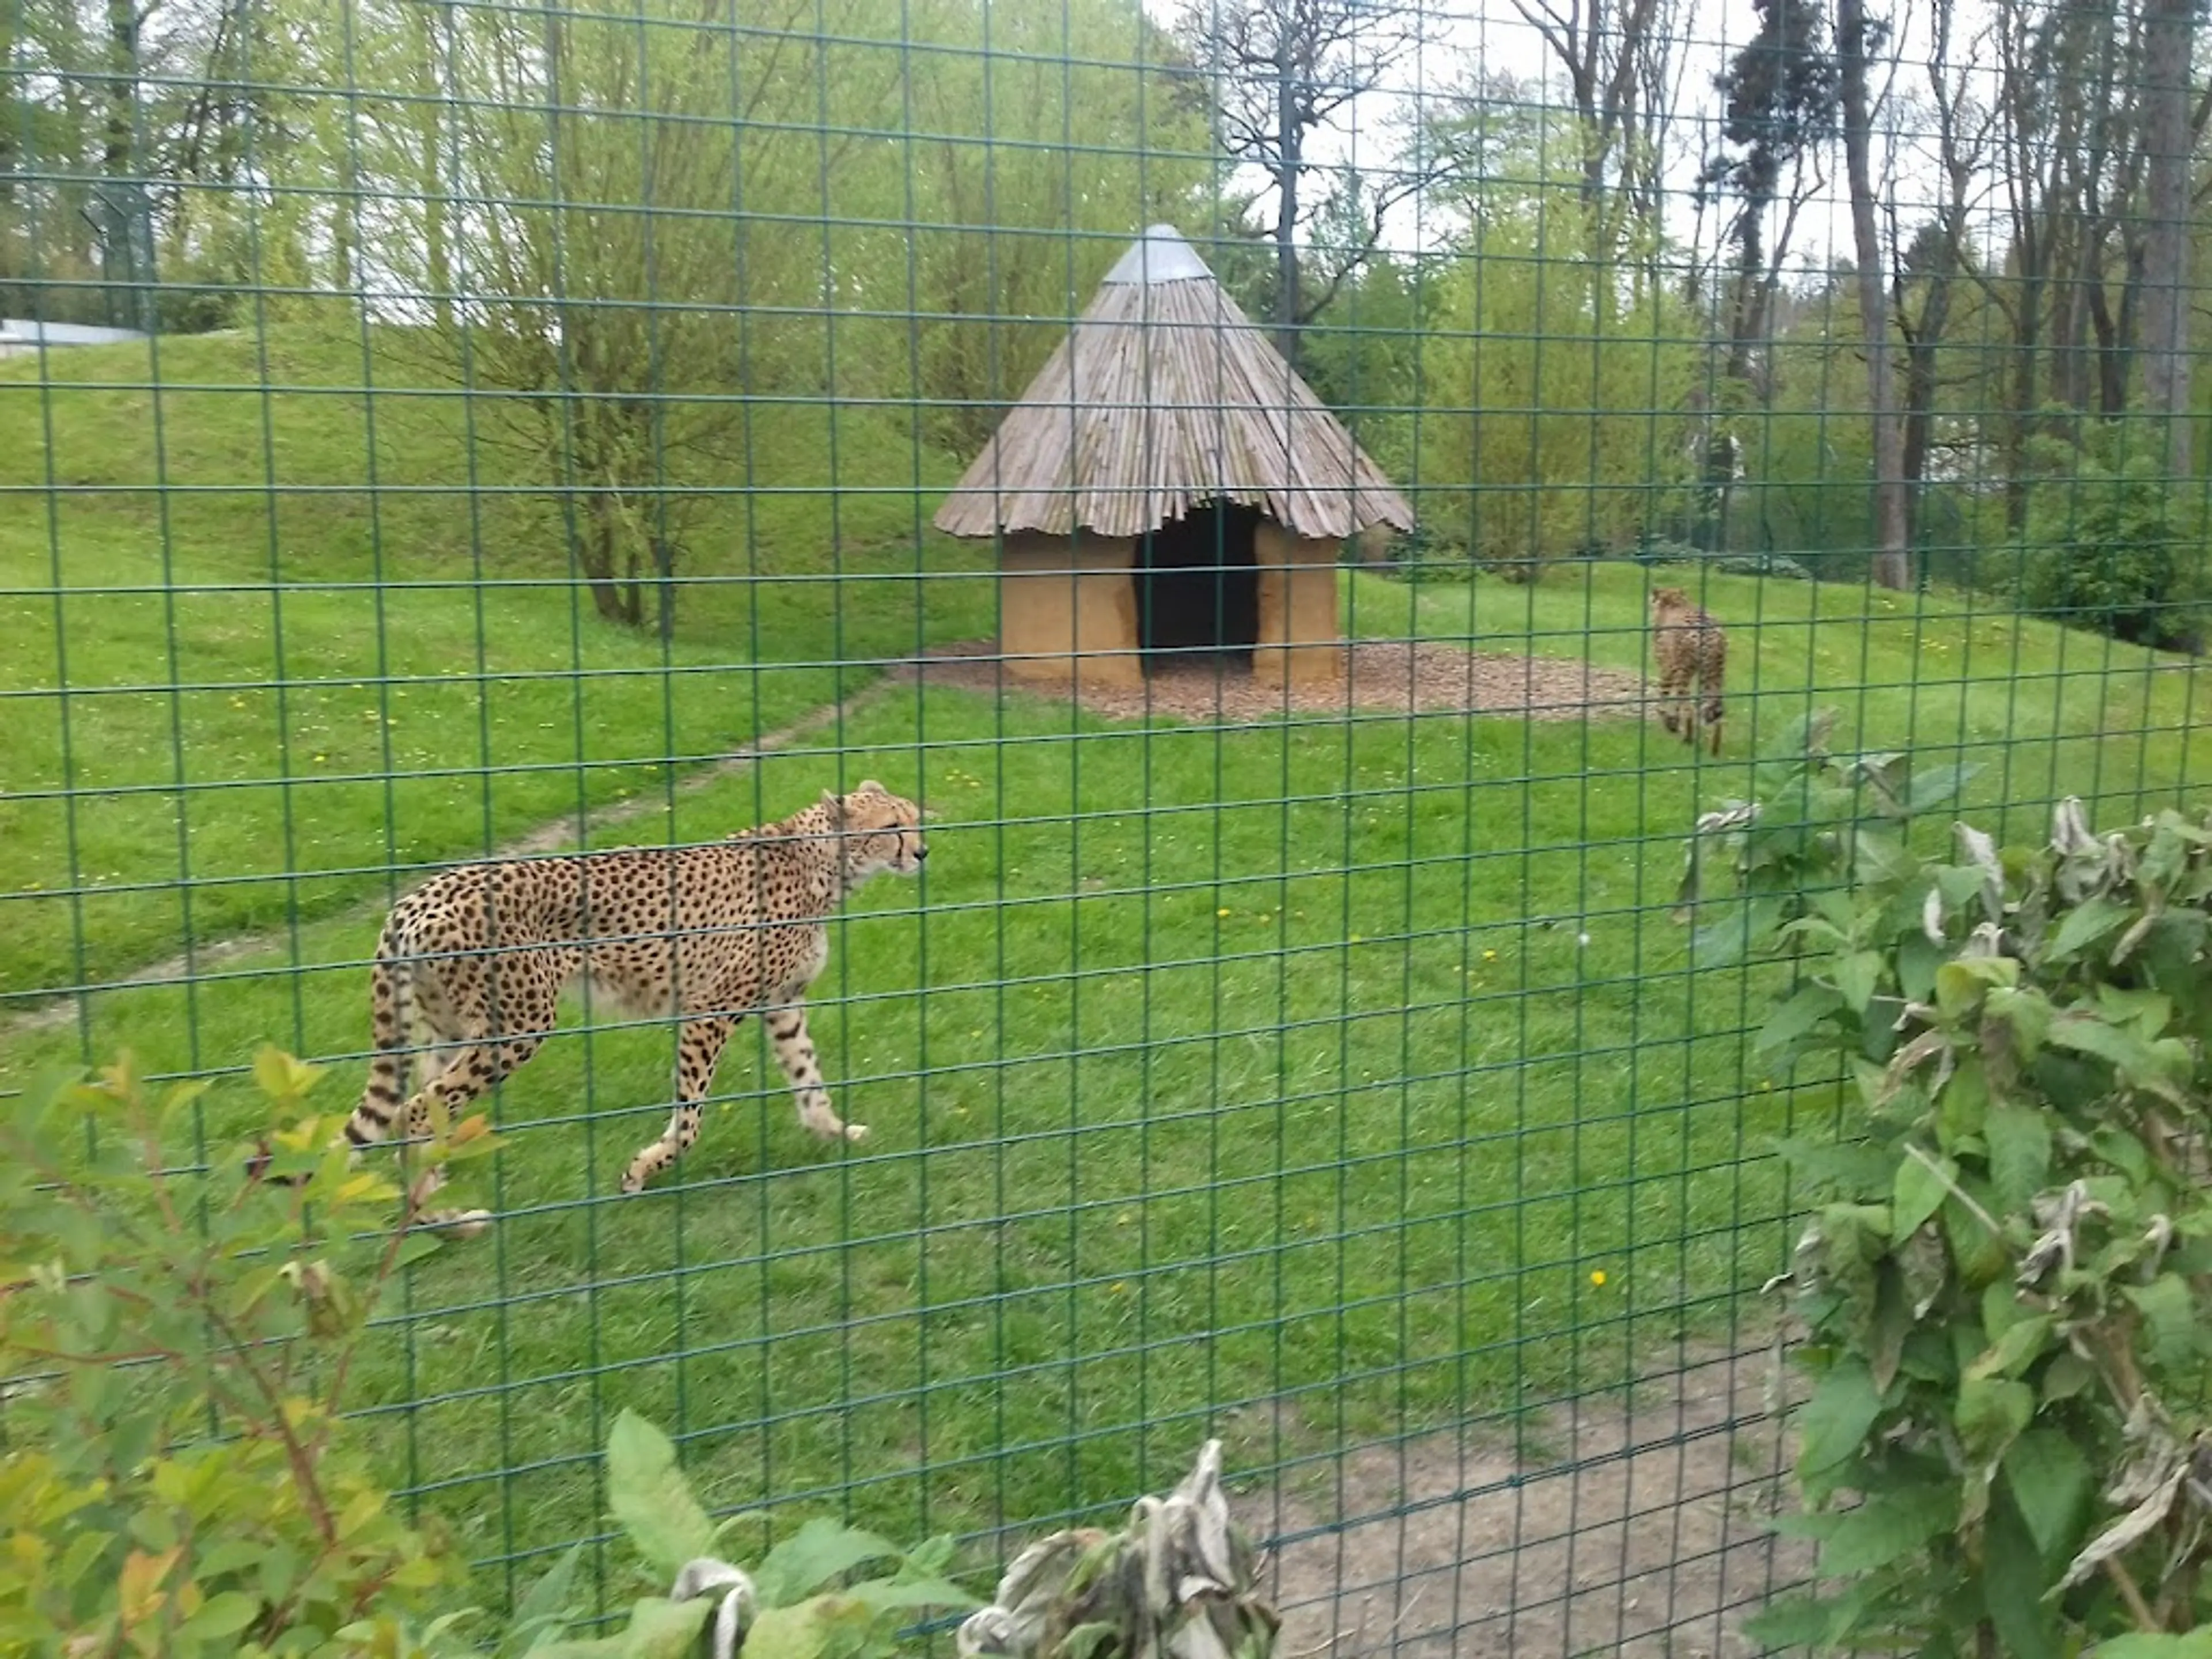 Aachen Zoo